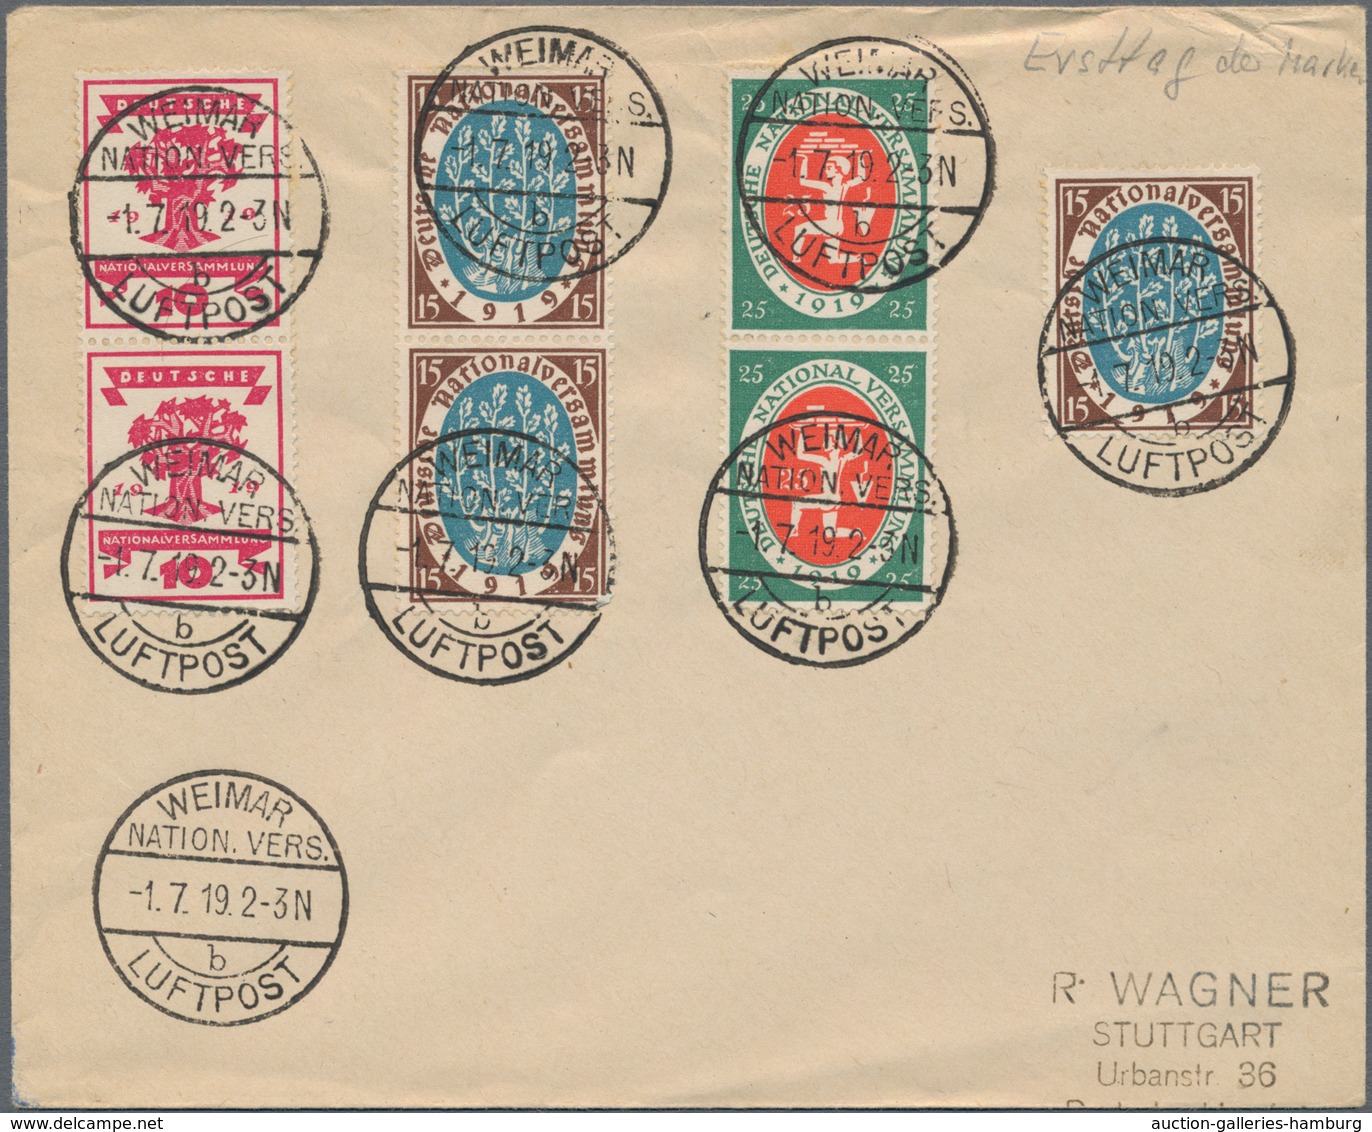 Deutsches Reich - Inflation: 1919-23, Briefe- und Kartenposten ab "Kriegsbeschädigte" bis 4-fach auf